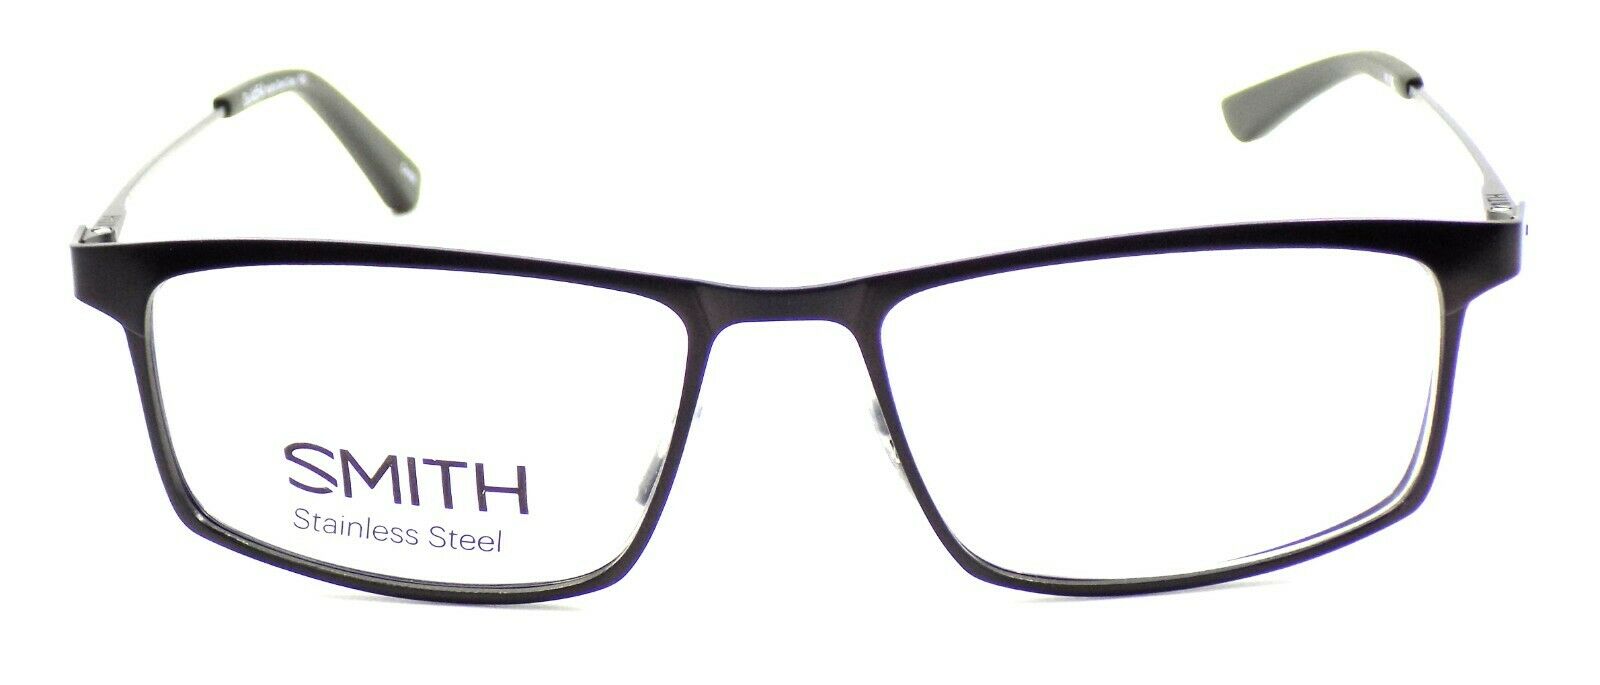 2-SMITH Optics Guild54 FRG Men's Eyeglasses Frames 54-17-140 Matte Dark Grey-762753295842-IKSpecs